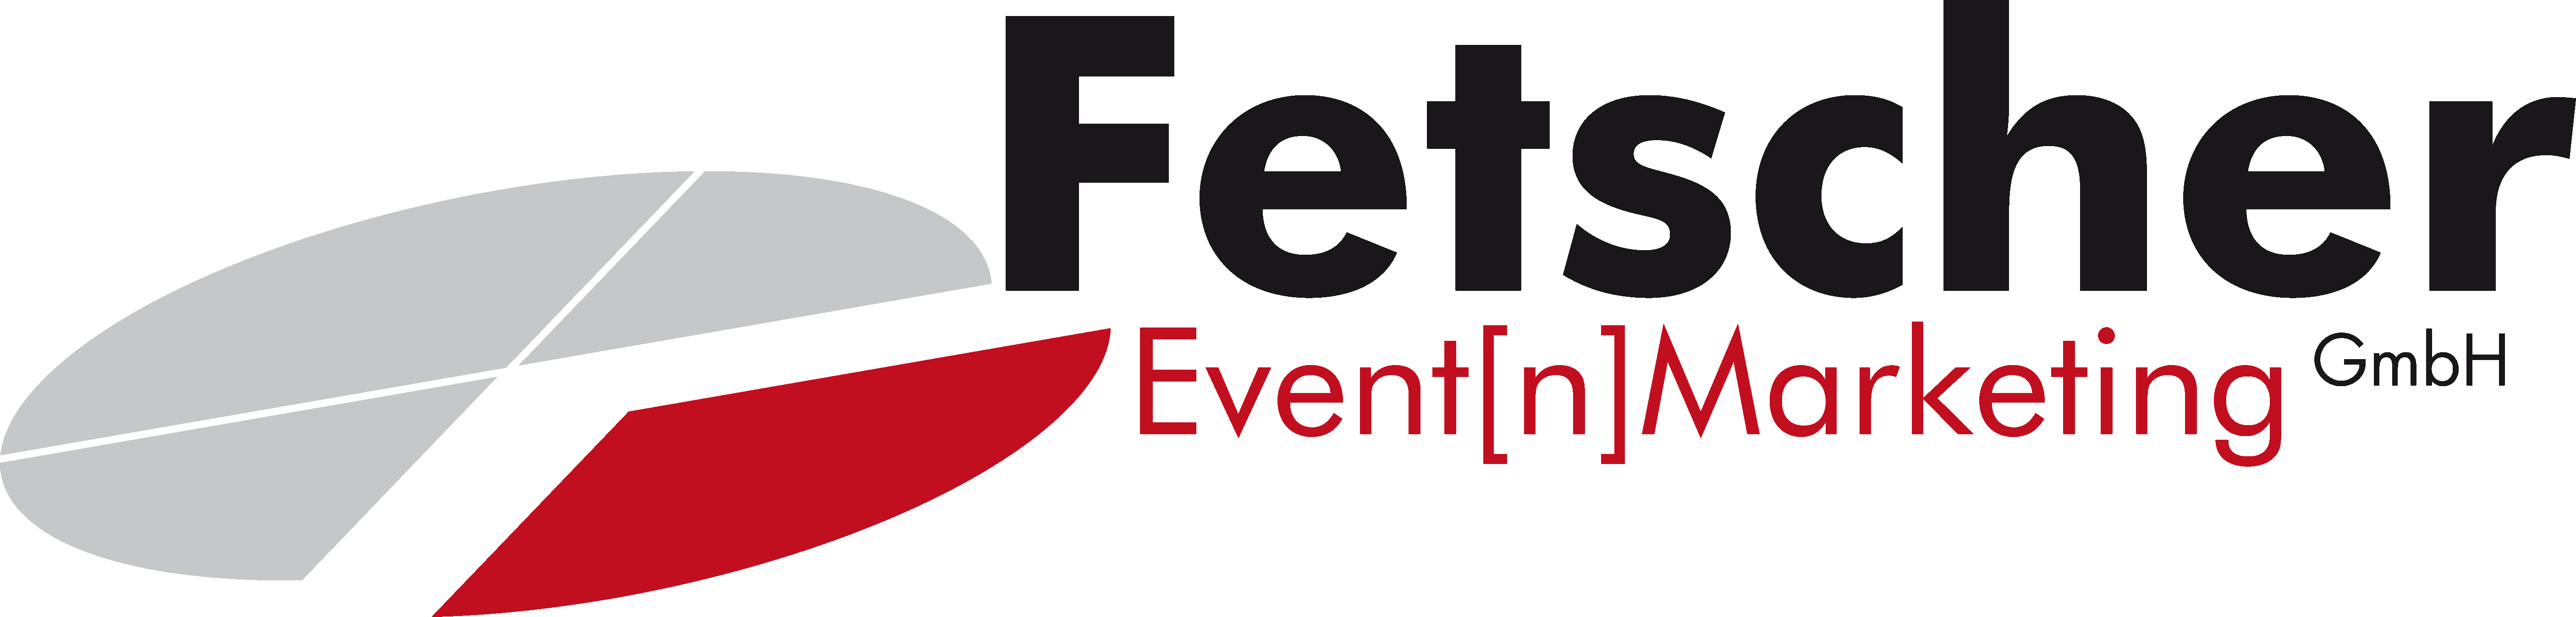 Fetscher Event[n]Marketing GmbH